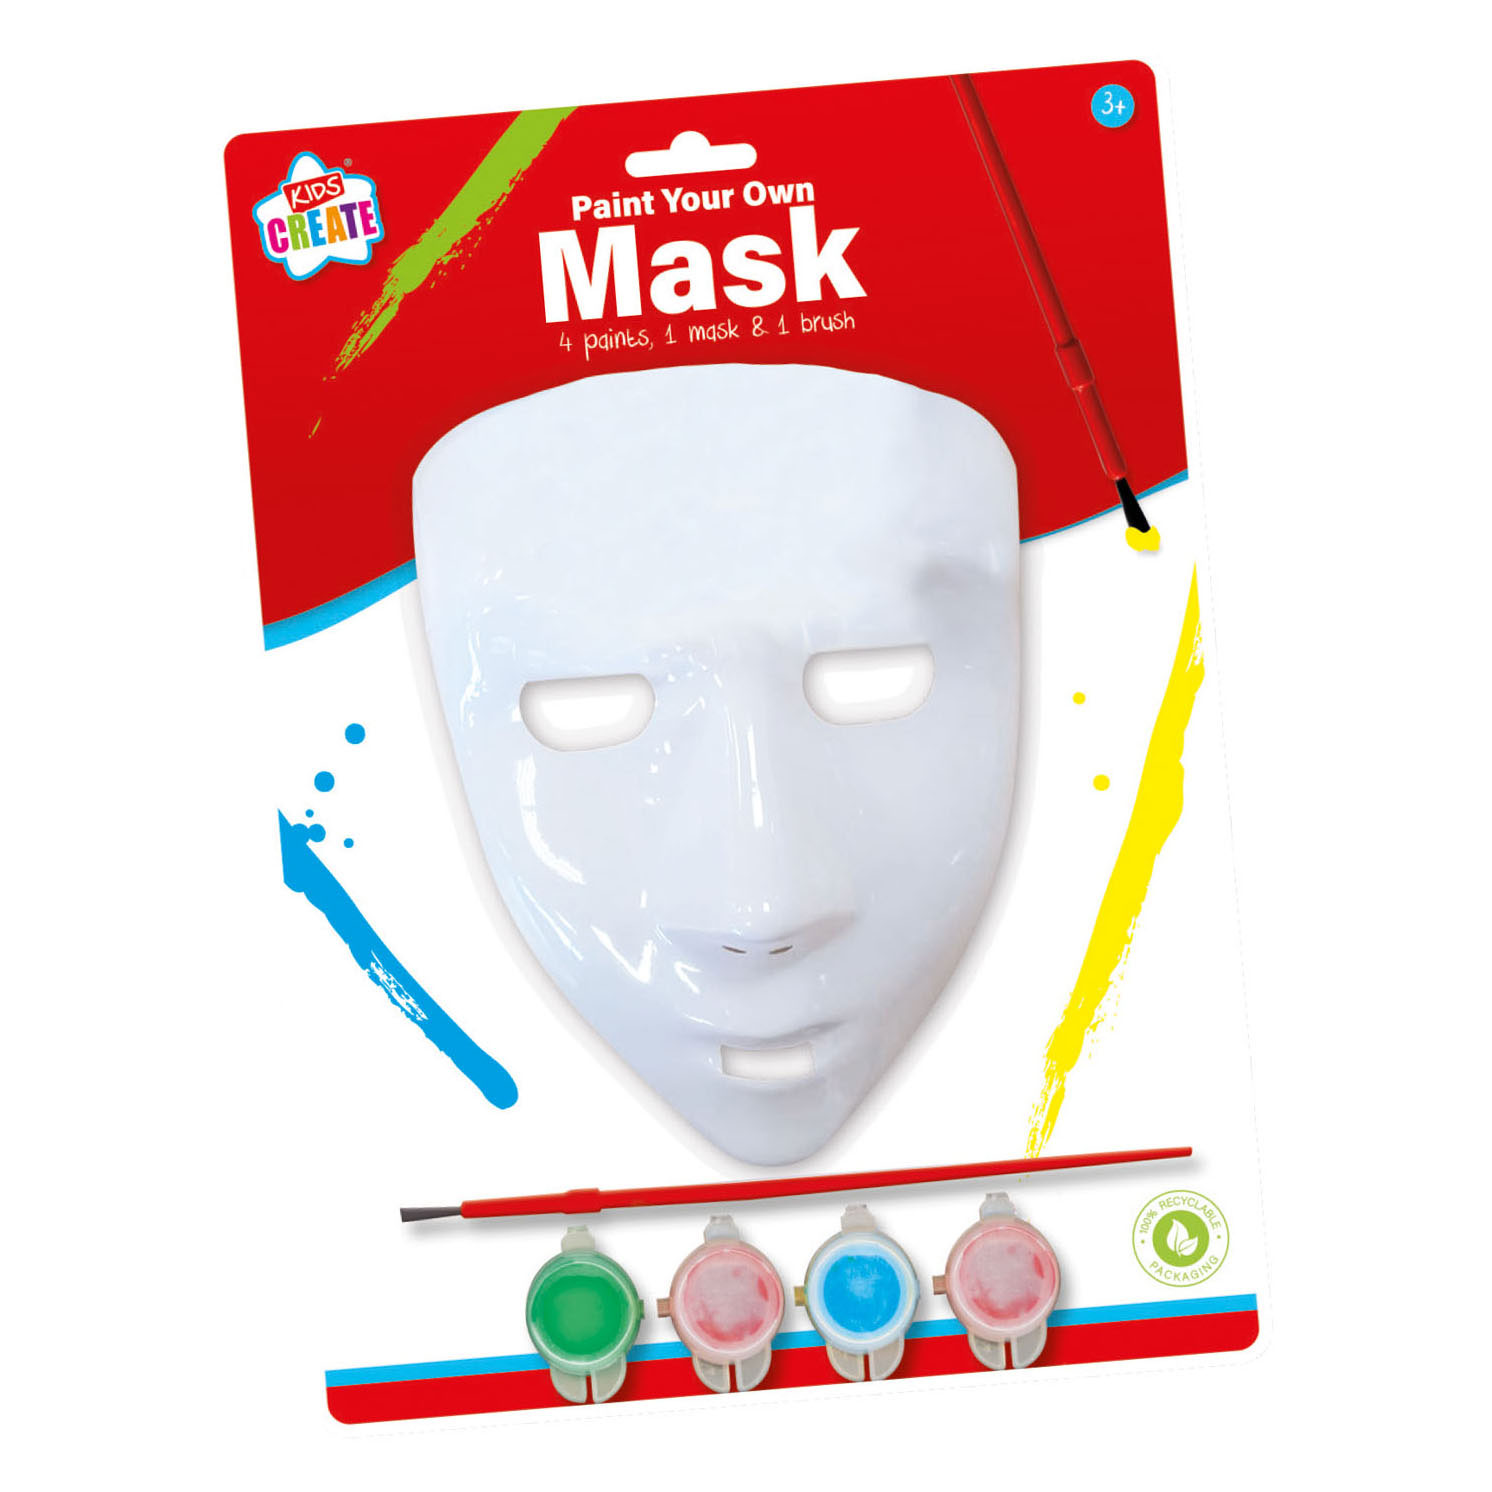 Dekorieren Sie Ihre eigene Maske